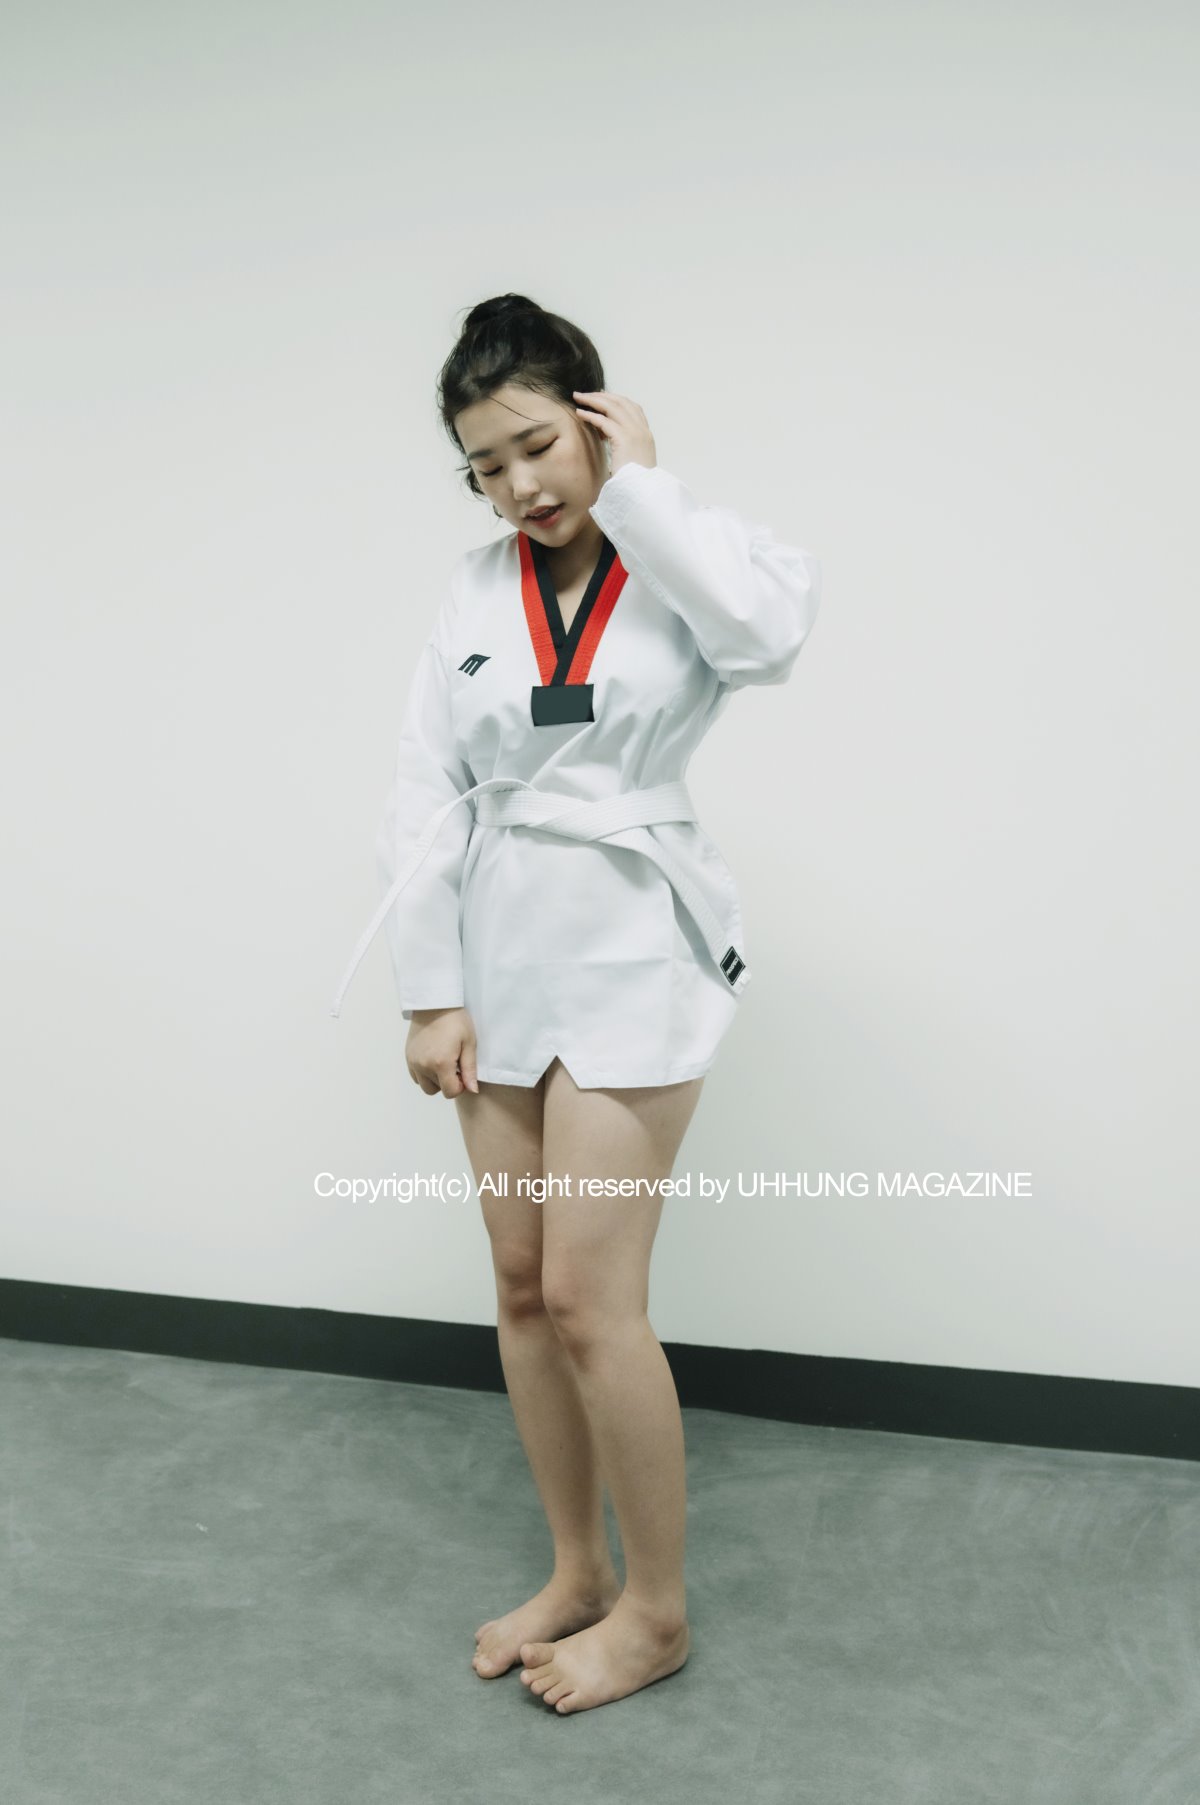 UHHUNG MAGAZINE Jenn Vol 1 Taekwondo Part1 0031 5630469539.jpg